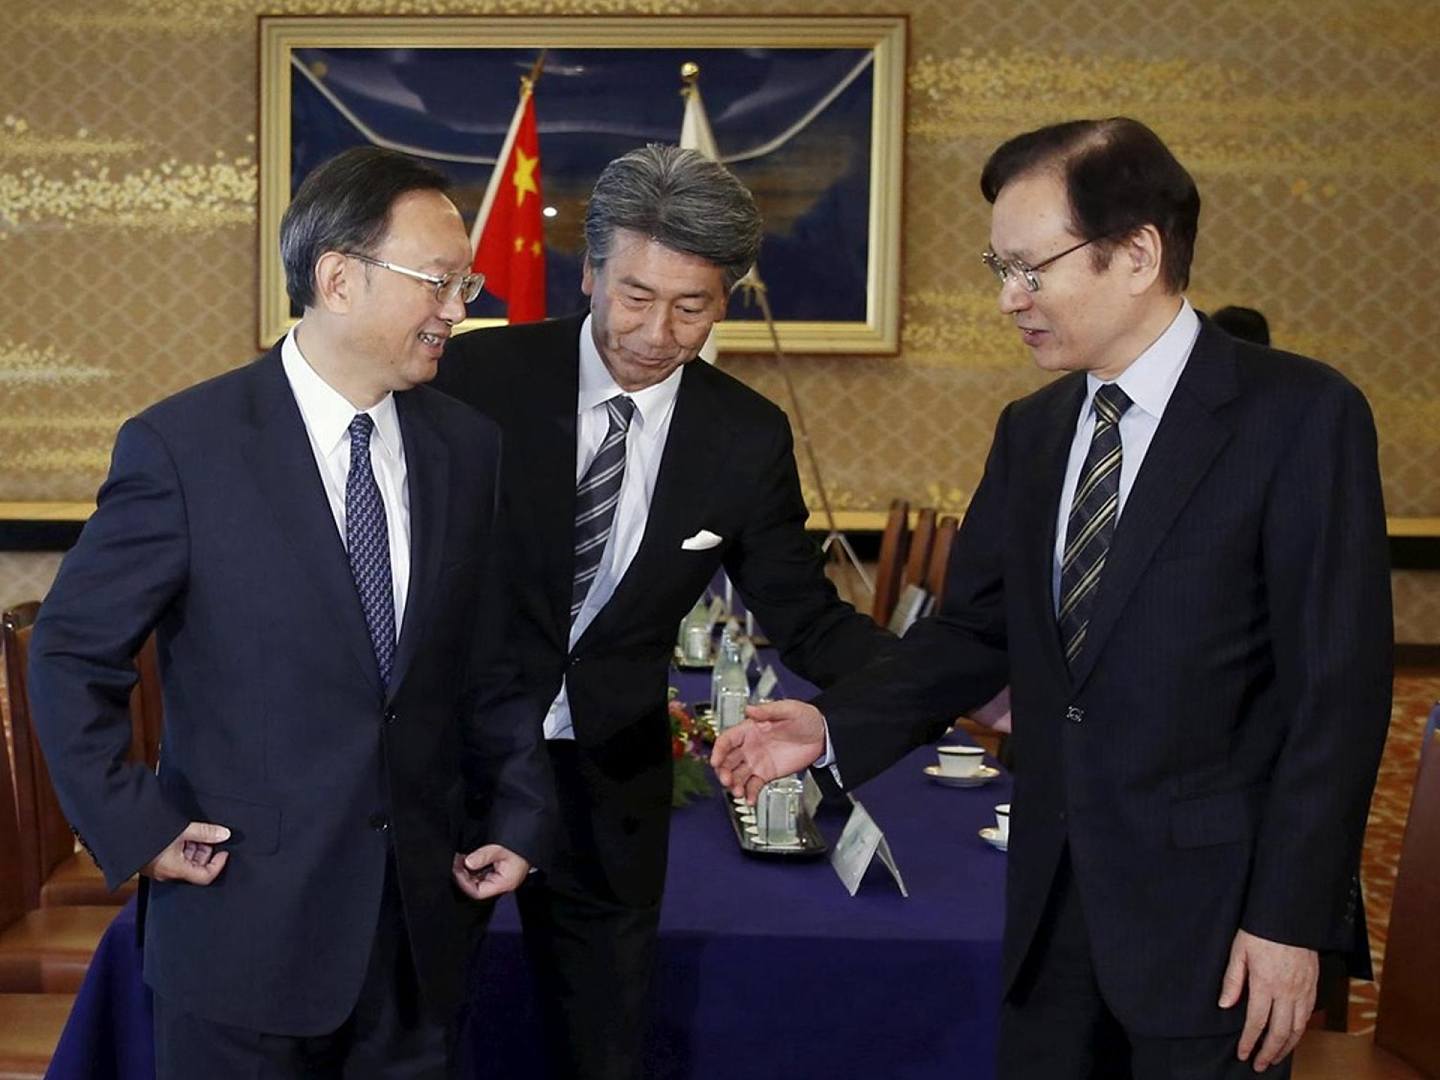 2015年10月13日，时任中国国务委员杨洁篪（左）访问日本，会晤时任日本国家安全保障局长谷内正太郎（右），现场争执钓鱼岛问题气氛尴尬。 （Reuters）